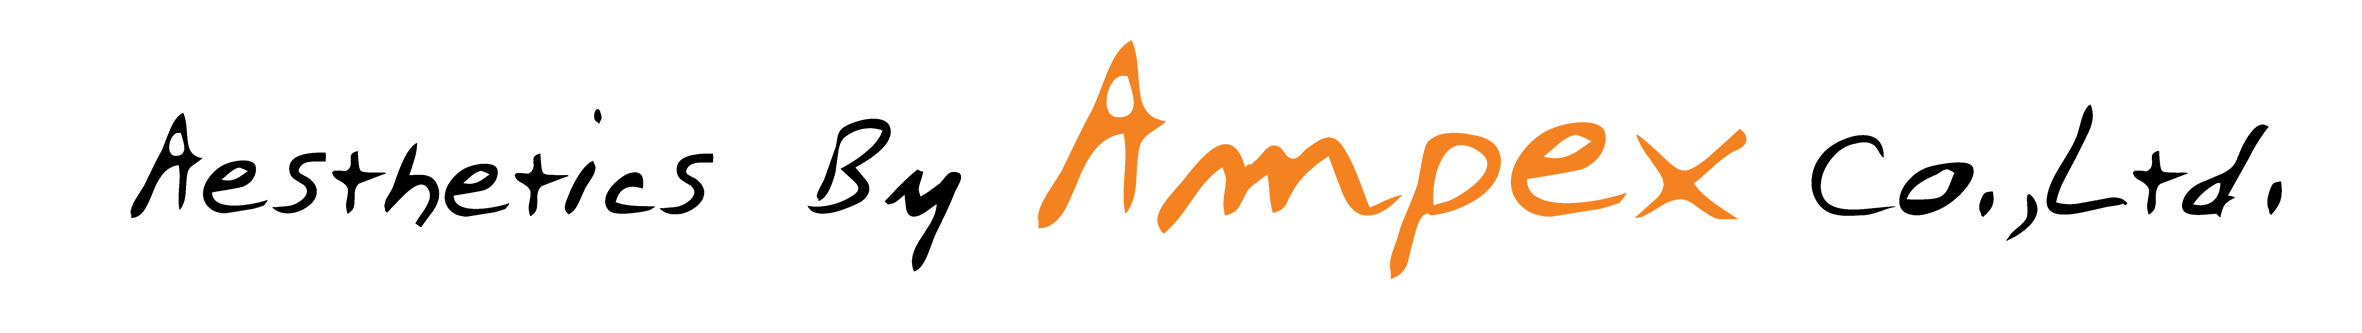 logo Ampex PNG ปัก